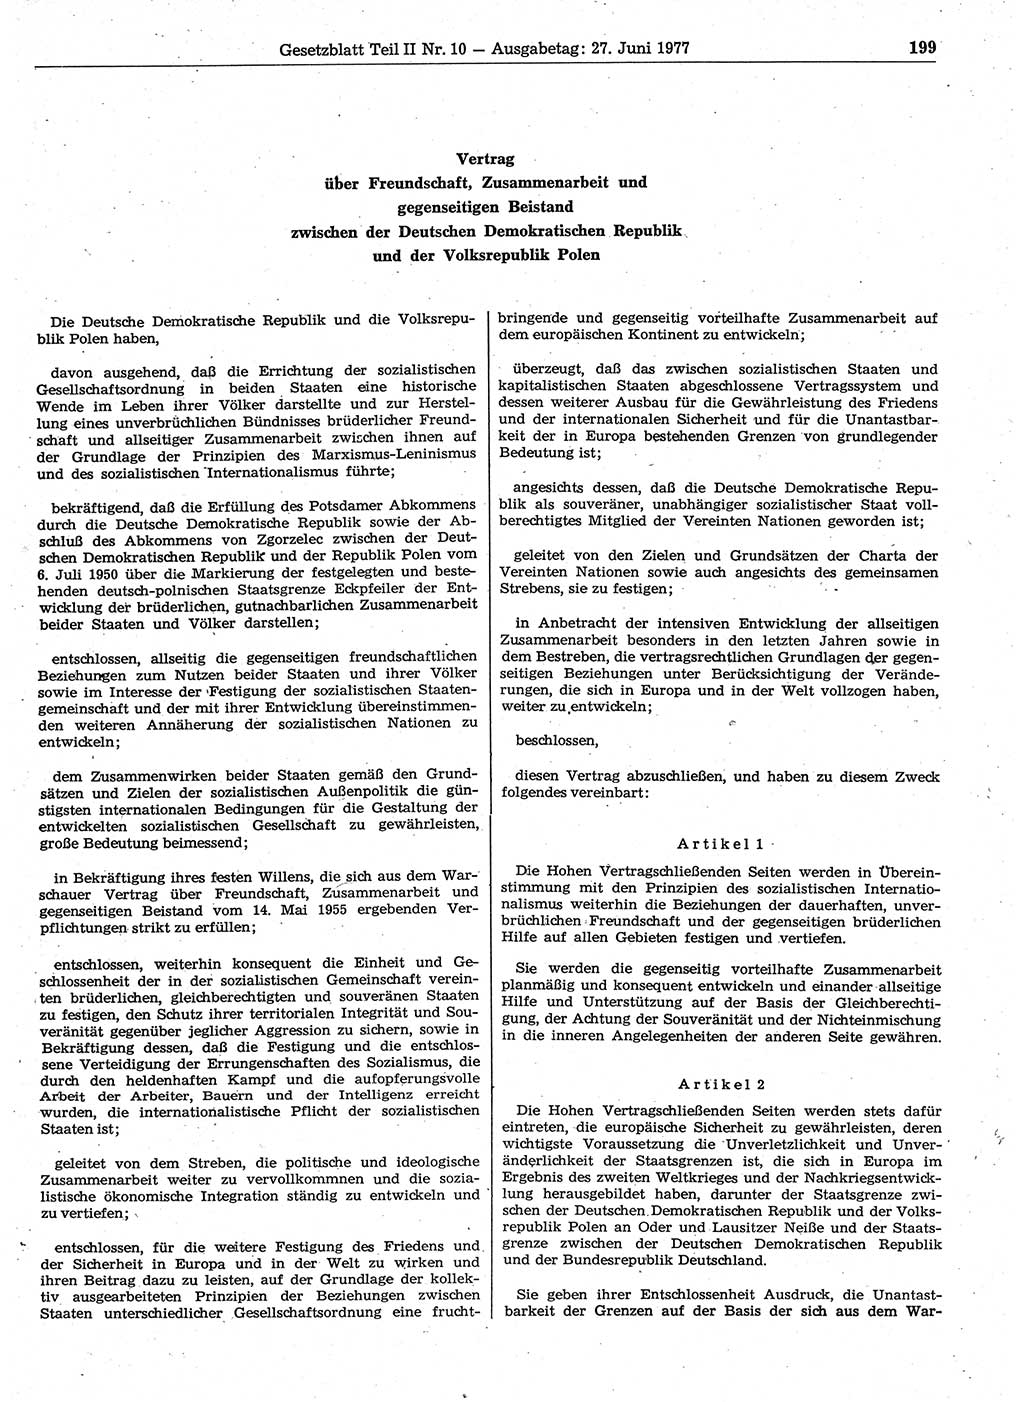 Gesetzblatt (GBl.) der Deutschen Demokratischen Republik (DDR) Teil ⅠⅠ 1977, Seite 199 (GBl. DDR ⅠⅠ 1977, S. 199)